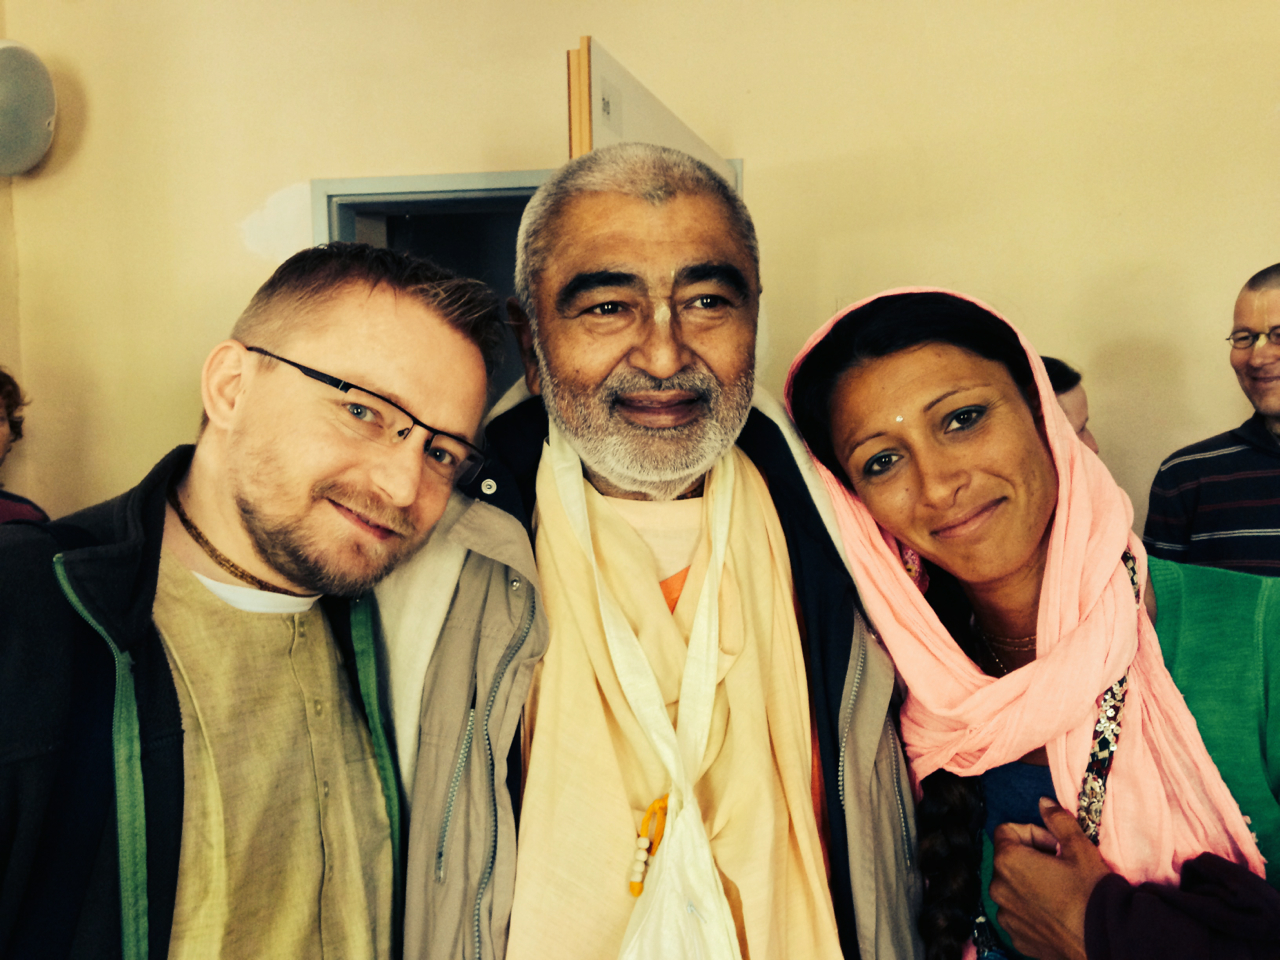 Berlin: Wizyta Sadhu Mharadźa. Łzy radości i rozmowy o duszy i Bogu.